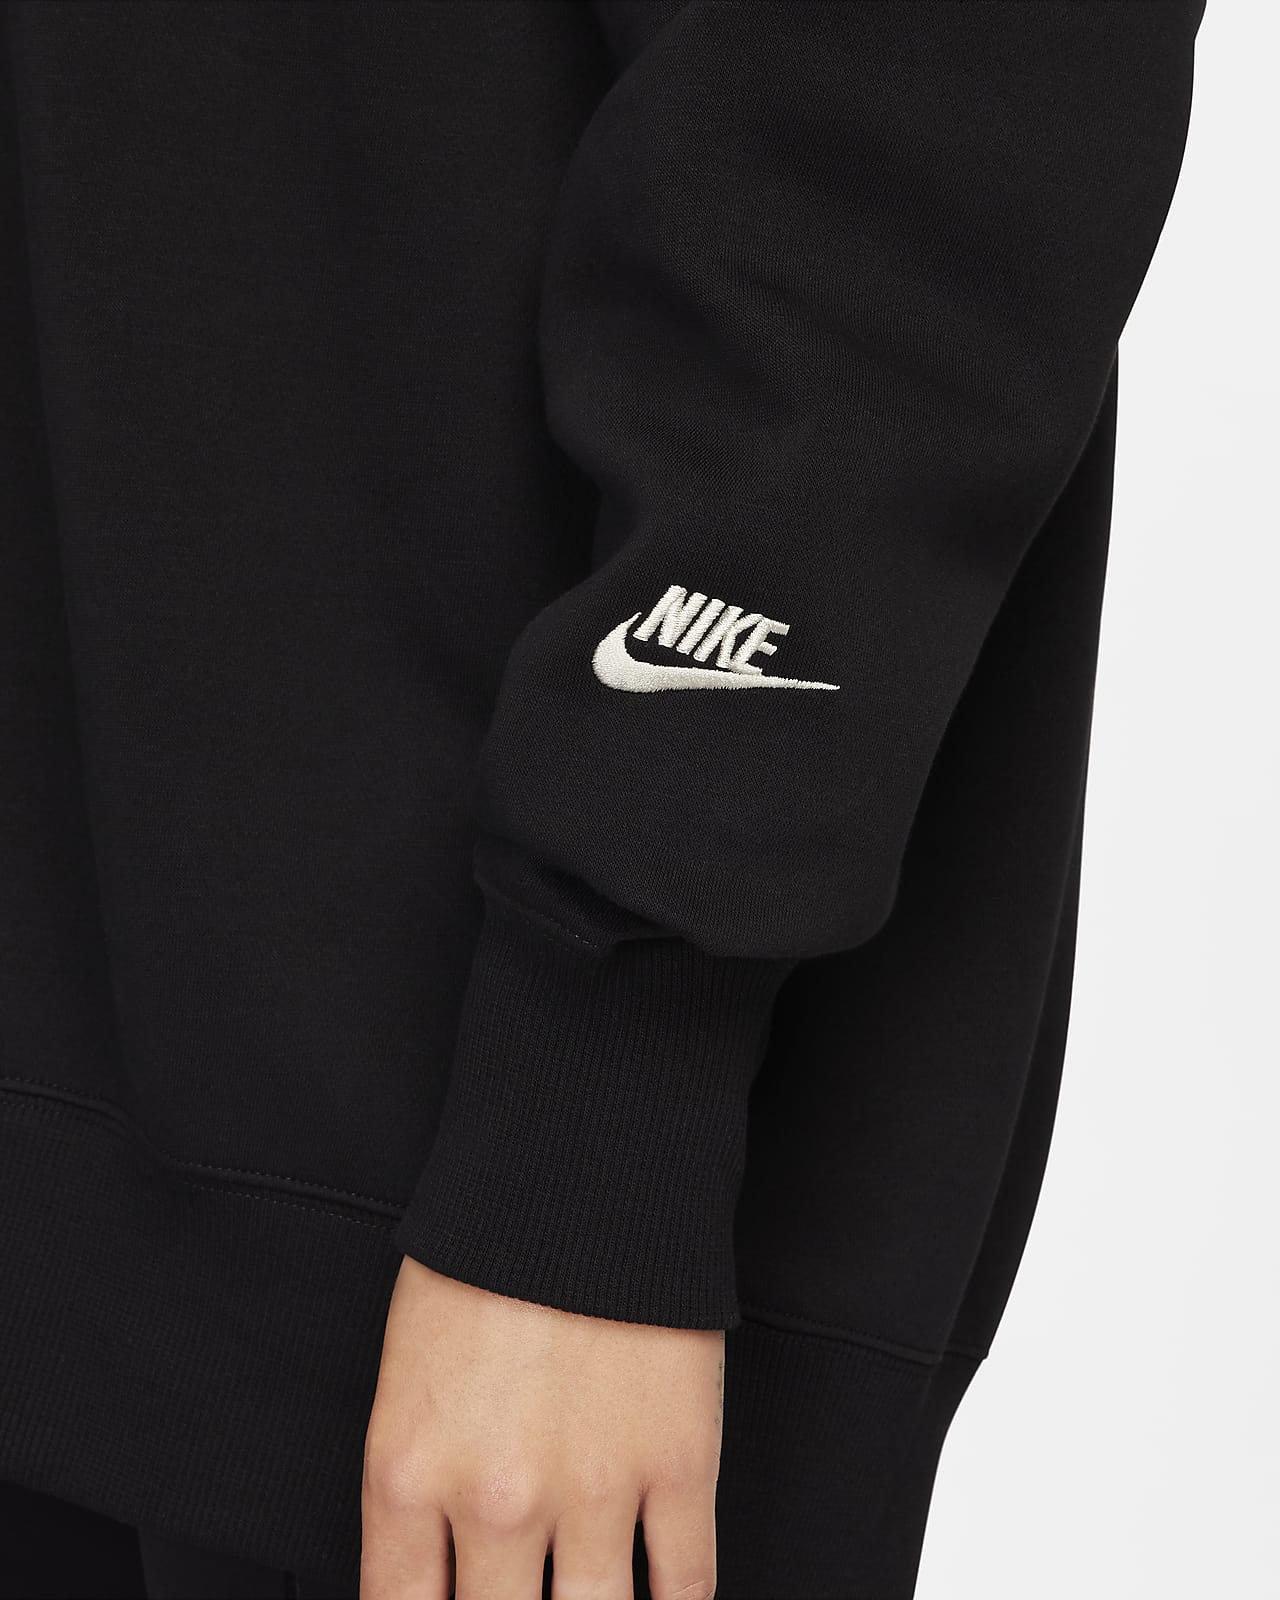 Nike Sportswear Club Fleece Women's Oversized Mock-Neck Sweatshirt. Nike.com